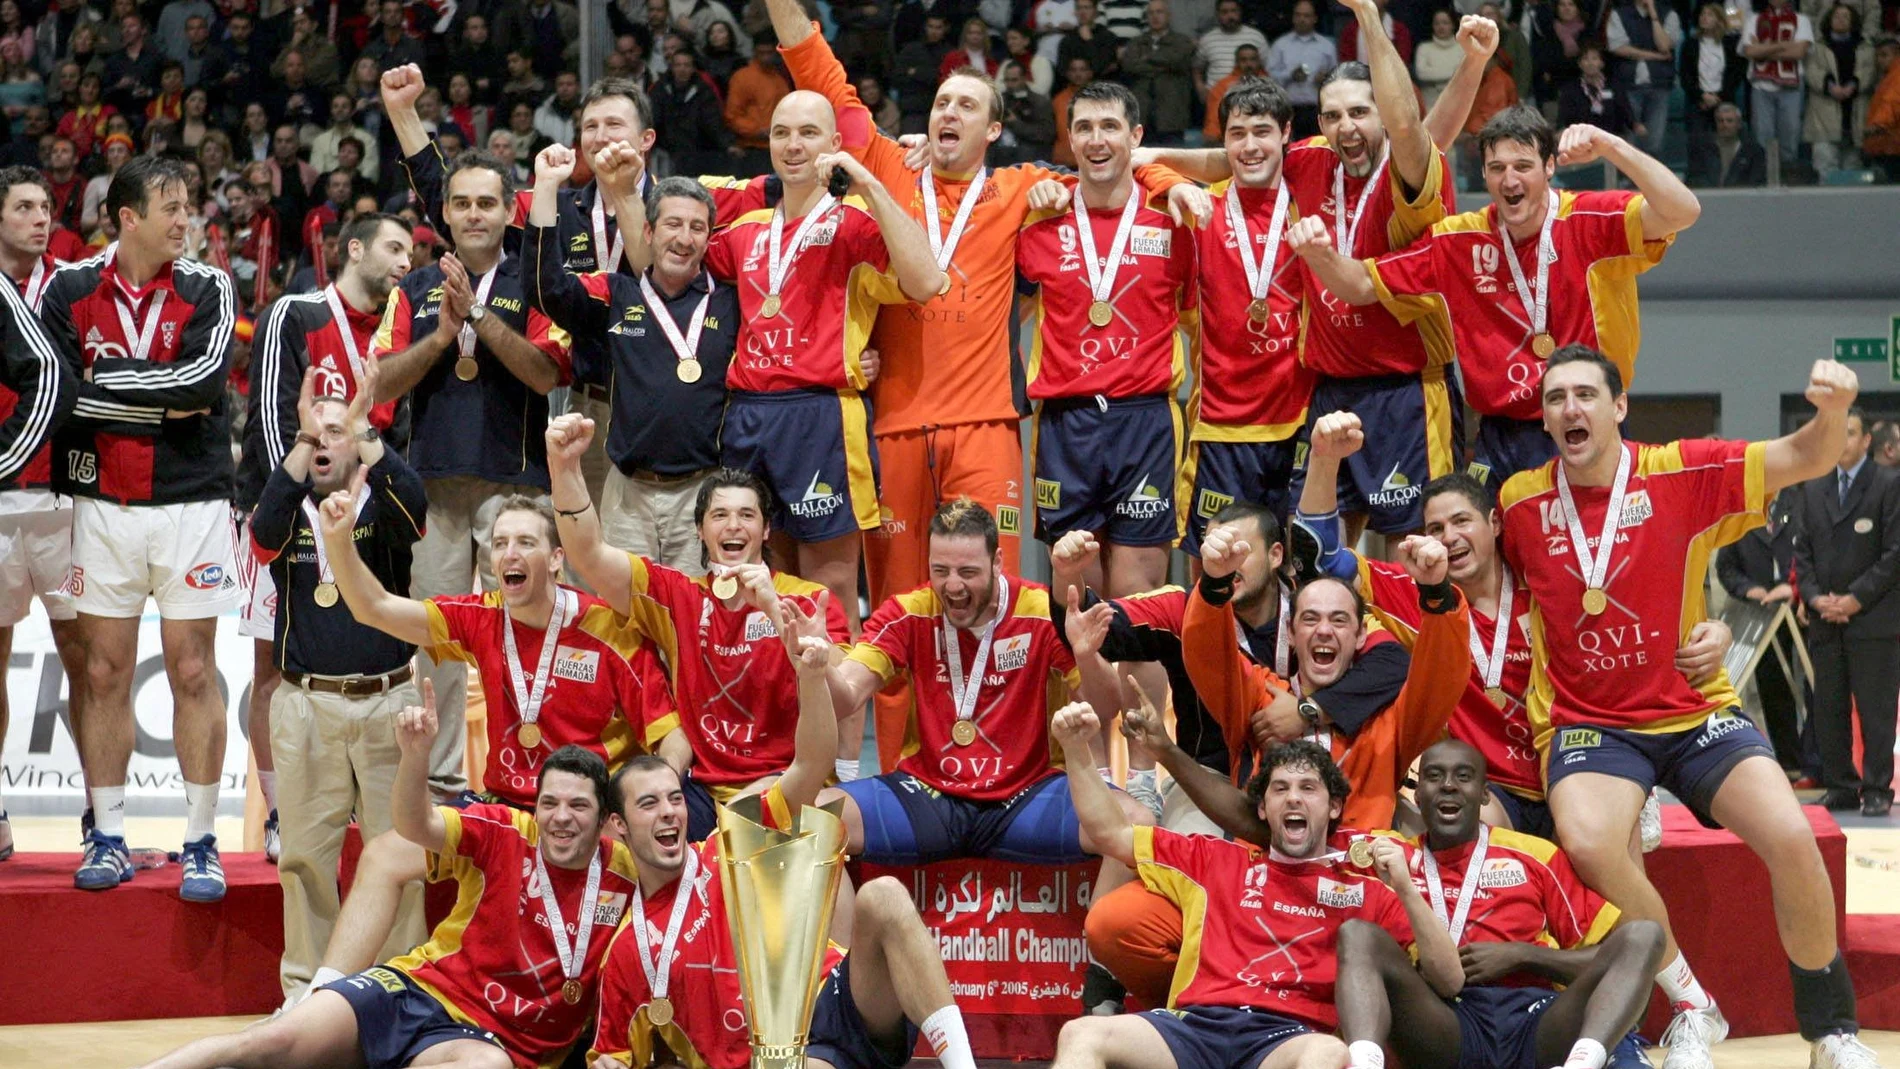 La selección española campeona del mundo en 2005, donde compartieron equipo Raúl Entrerríos (antepenúltimo de la fila de arriba) y su hermano Alberto (segundo de la fila de enmedio)